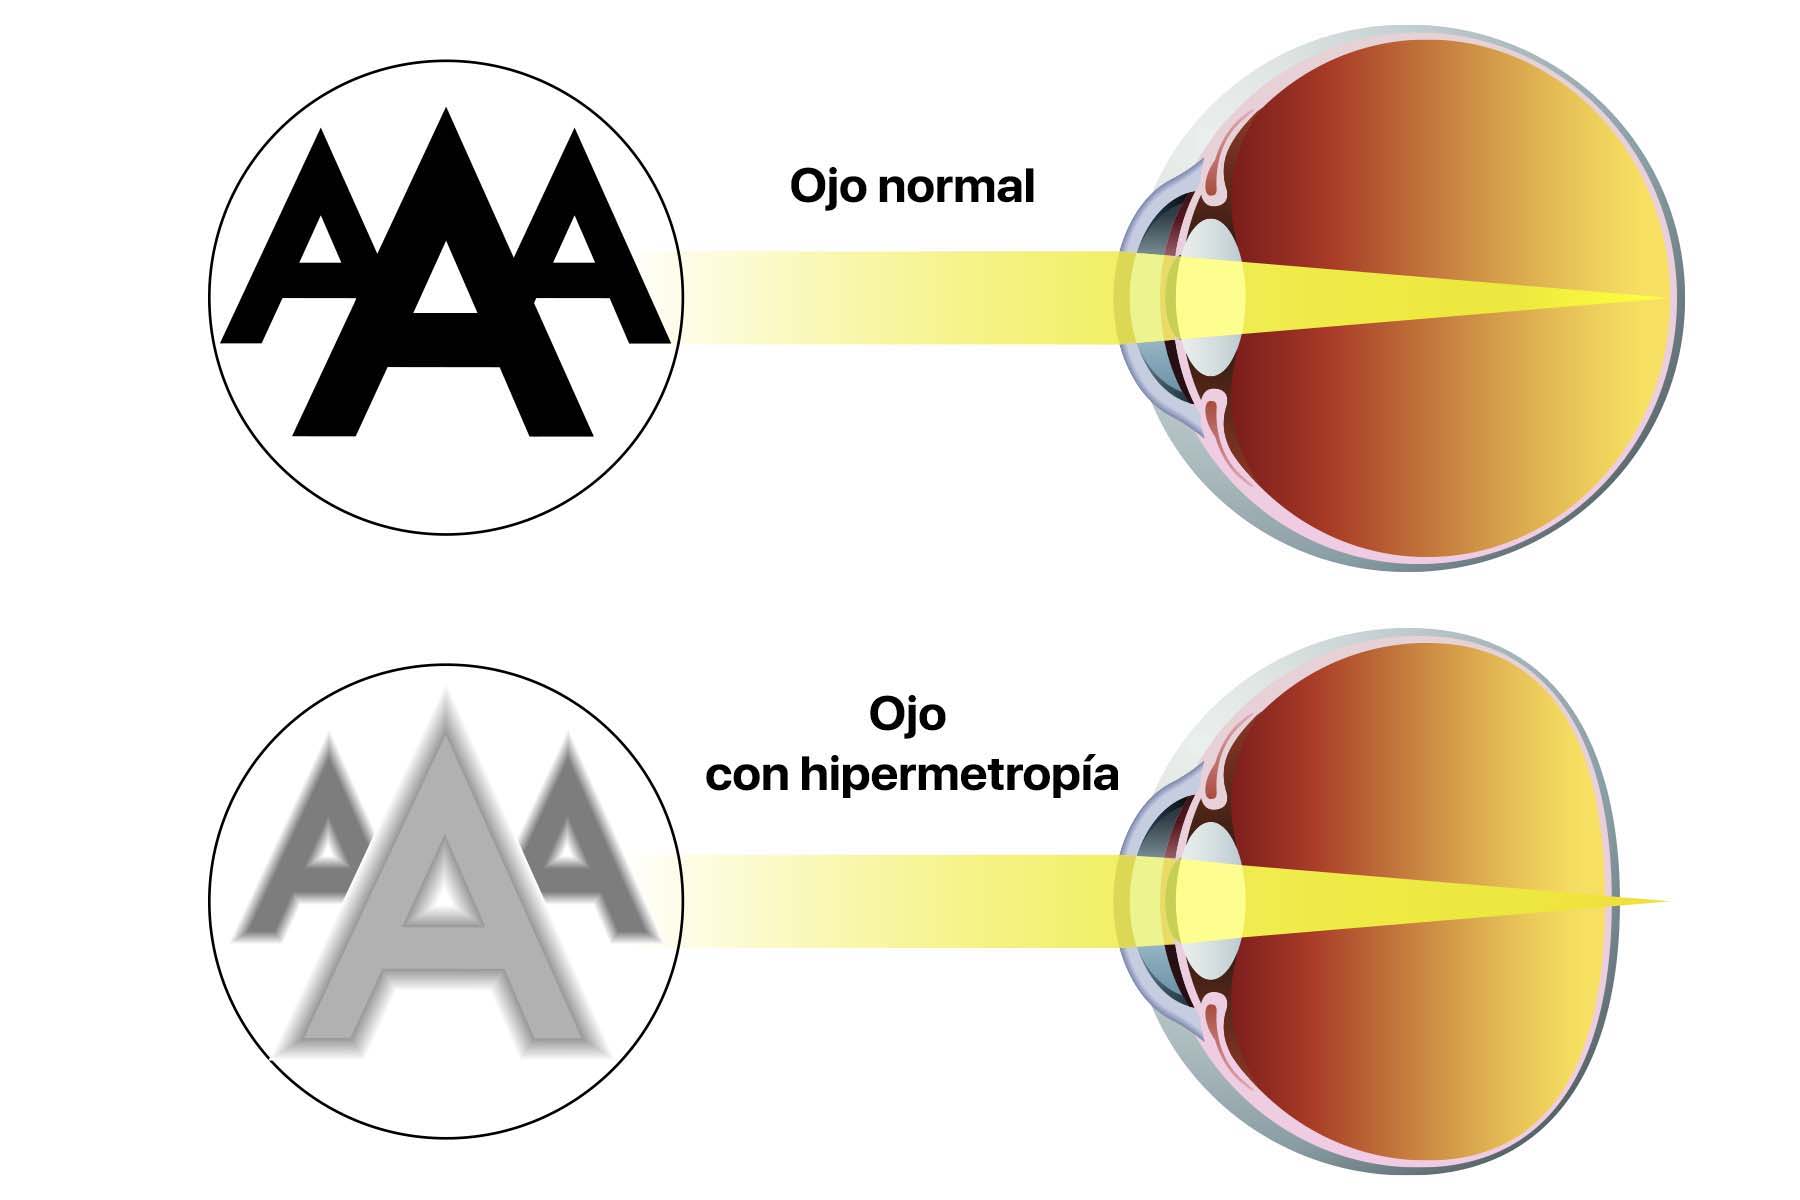 Gráfico en el que vemos tres letras A desde la visión de un ojo con hipermetropía y desde otro que no lo tiene. La idea es comparar las diferencias visuales que existen entre uno y otro.